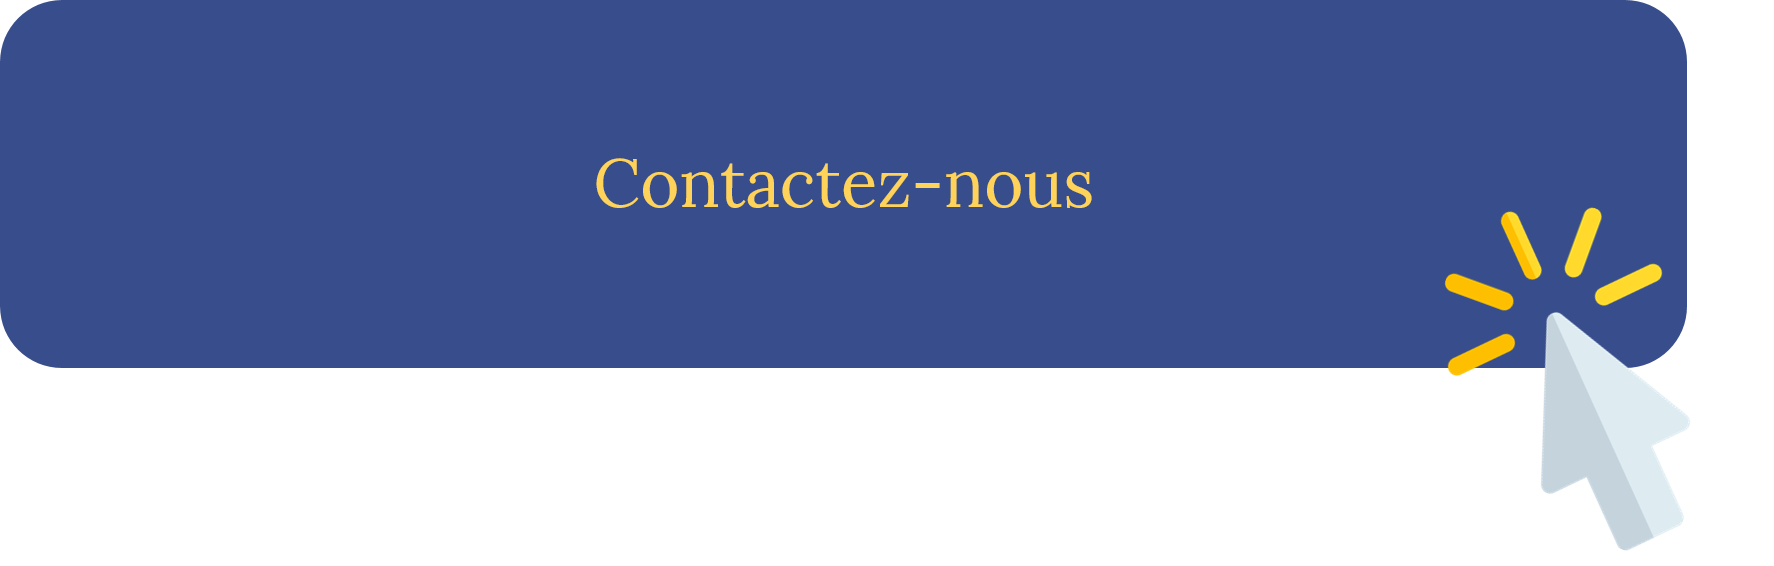 Contactez-nous - Châteauform' Blog